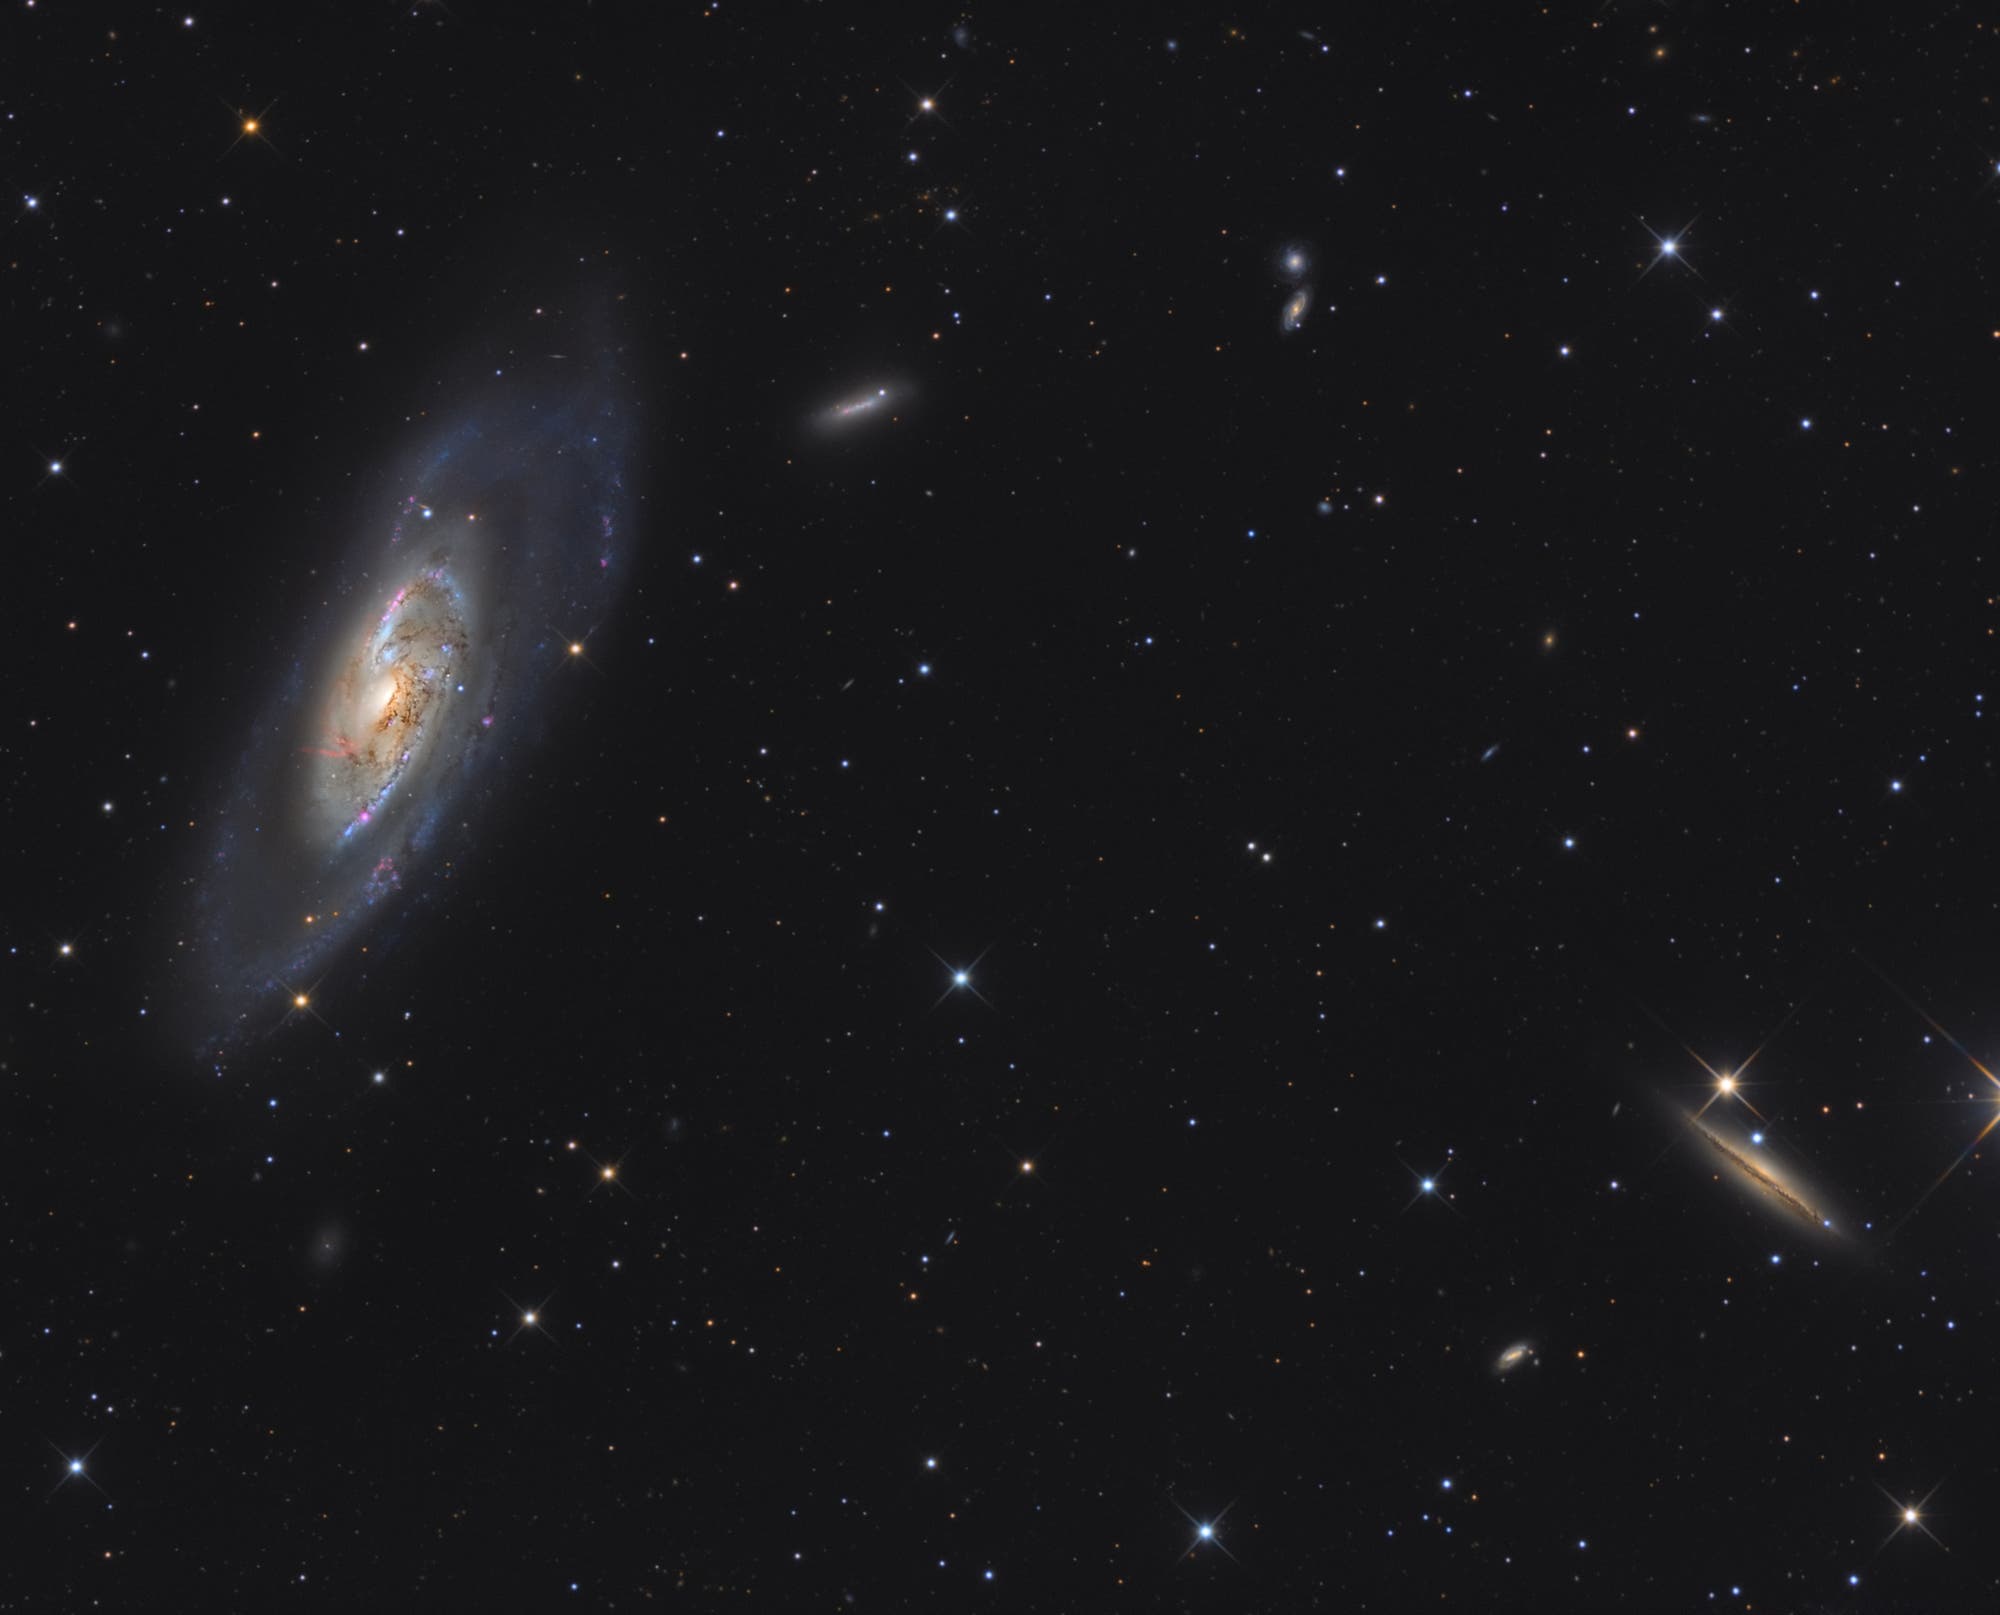 Die Spiralgalaxie Messier 106 im Sternbild Jagdhunde